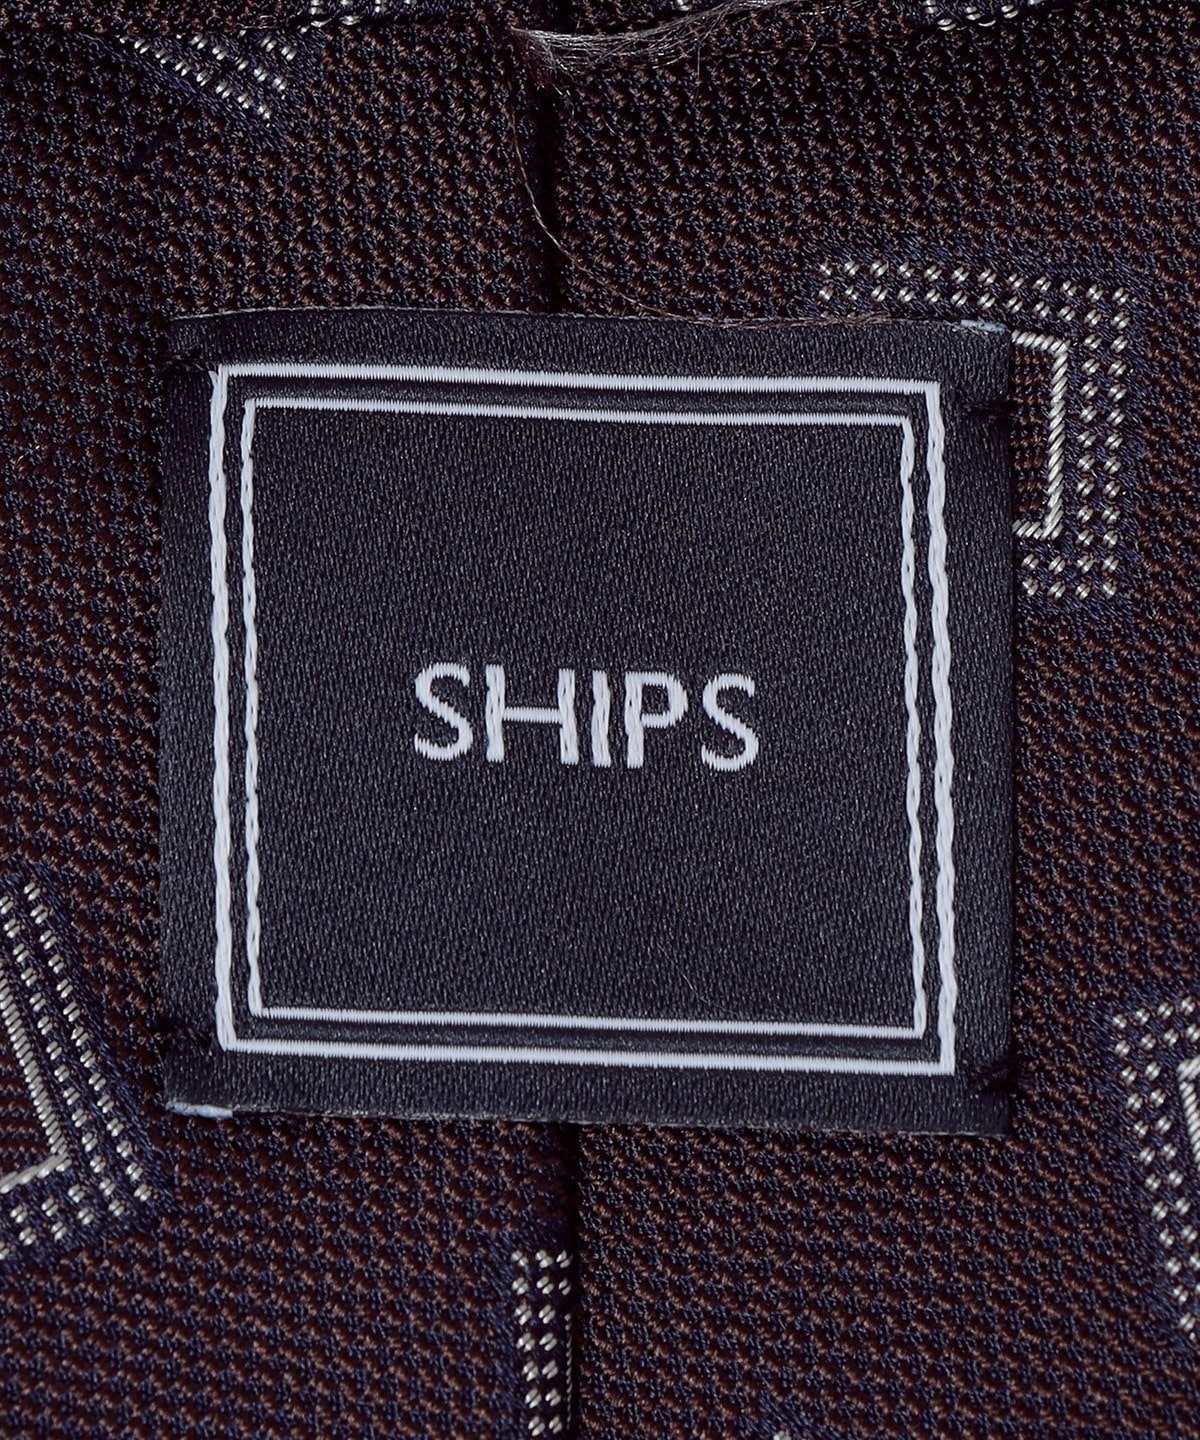 SHIPS: シルク ジャガード コモン ネクタイ: スーツ/ビジネス小物